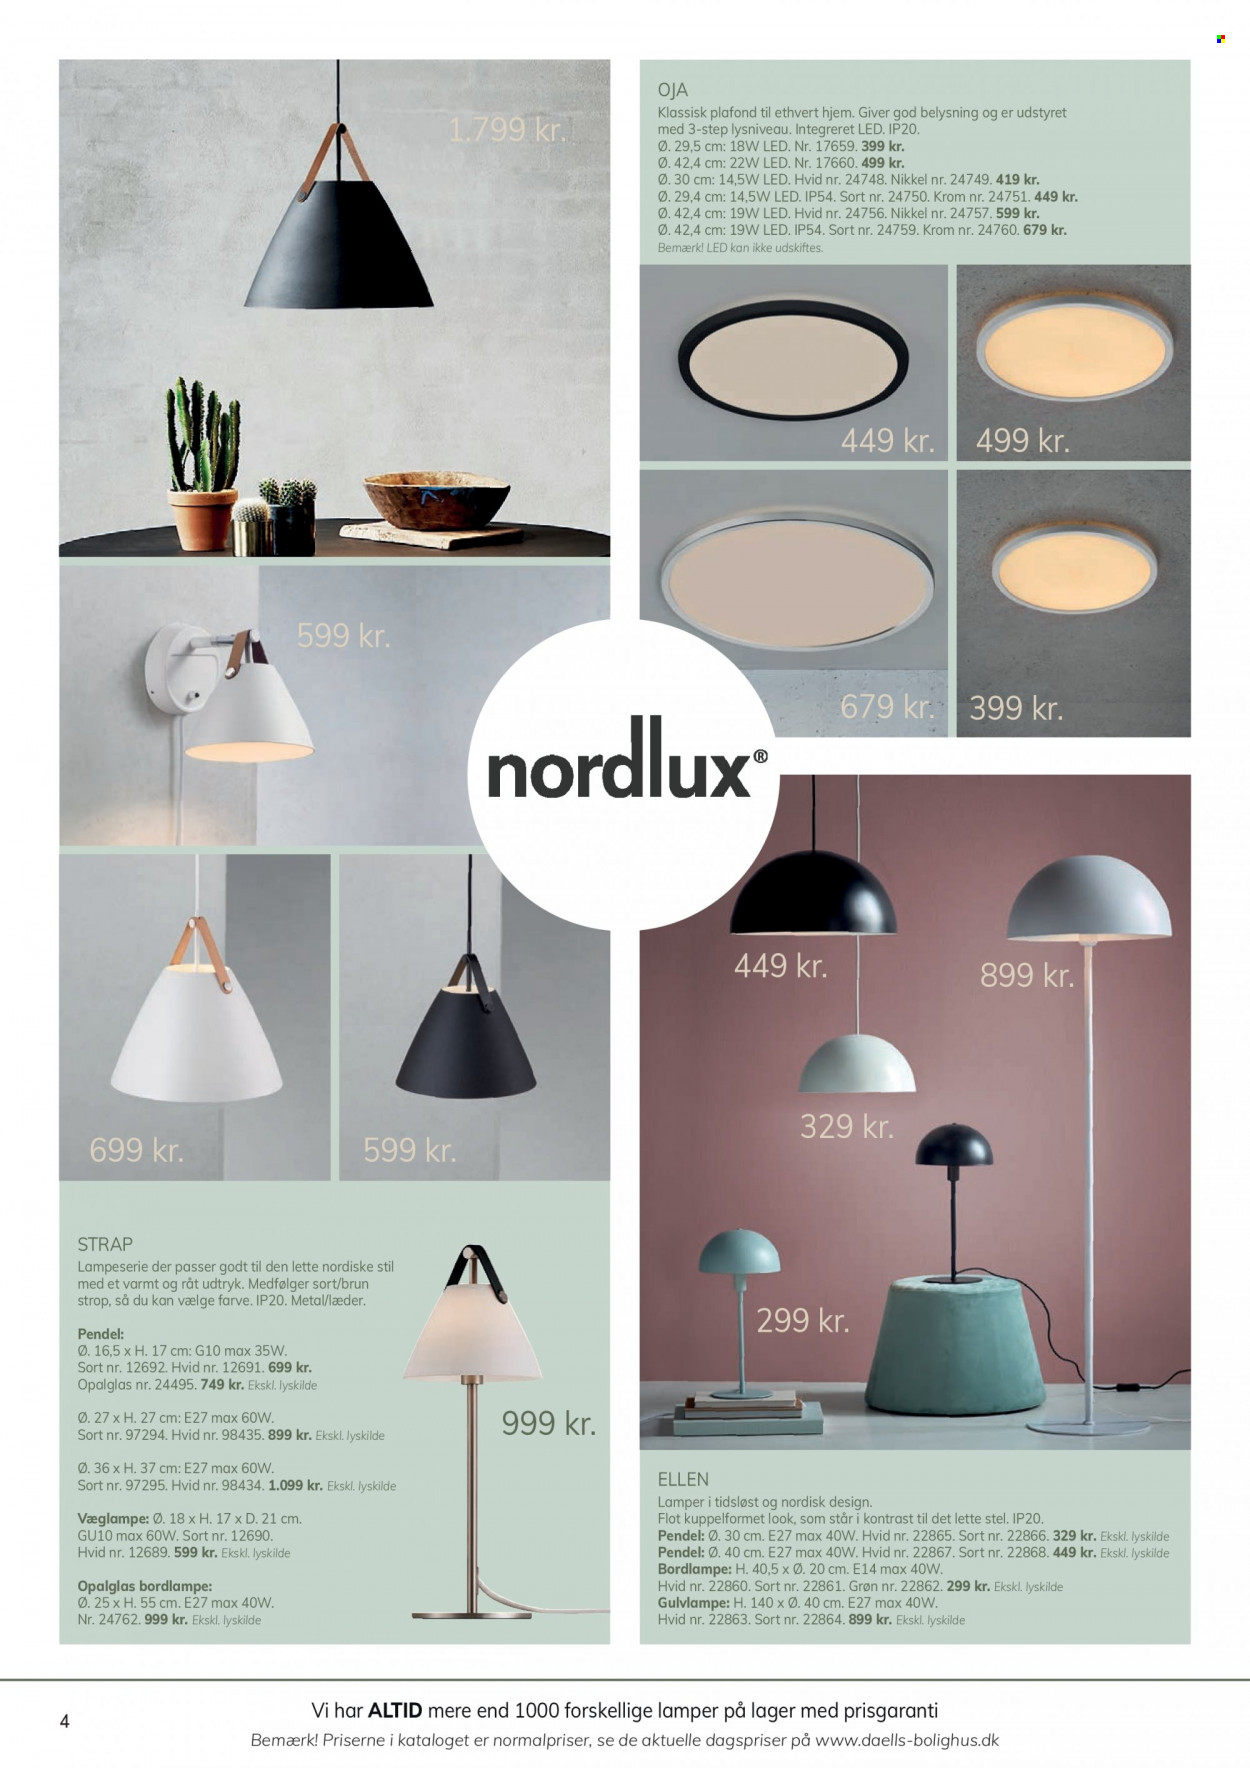 thumbnail - Daells Bolighus tilbud  - tilbudsprodukter - pendel, bordlampe, gulvlampe, plafond. Side 4.